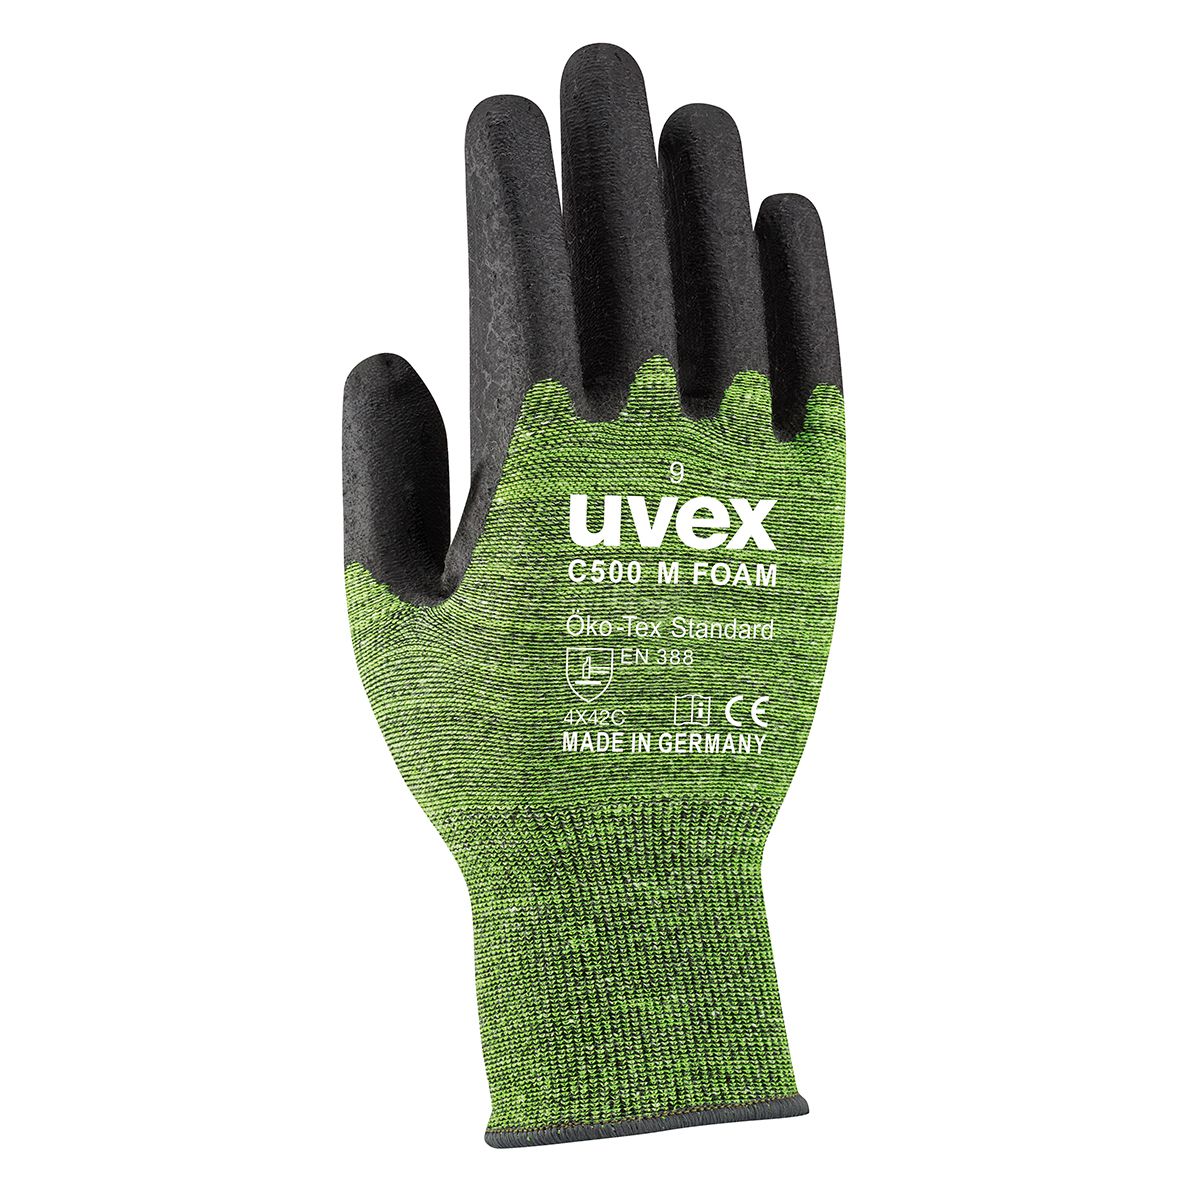 ABVERKAUF: uvex Safety C500 M foam, sehr flexible Schnittschutzhandschuhe mit Doppel-Beschichtung, Größe 09